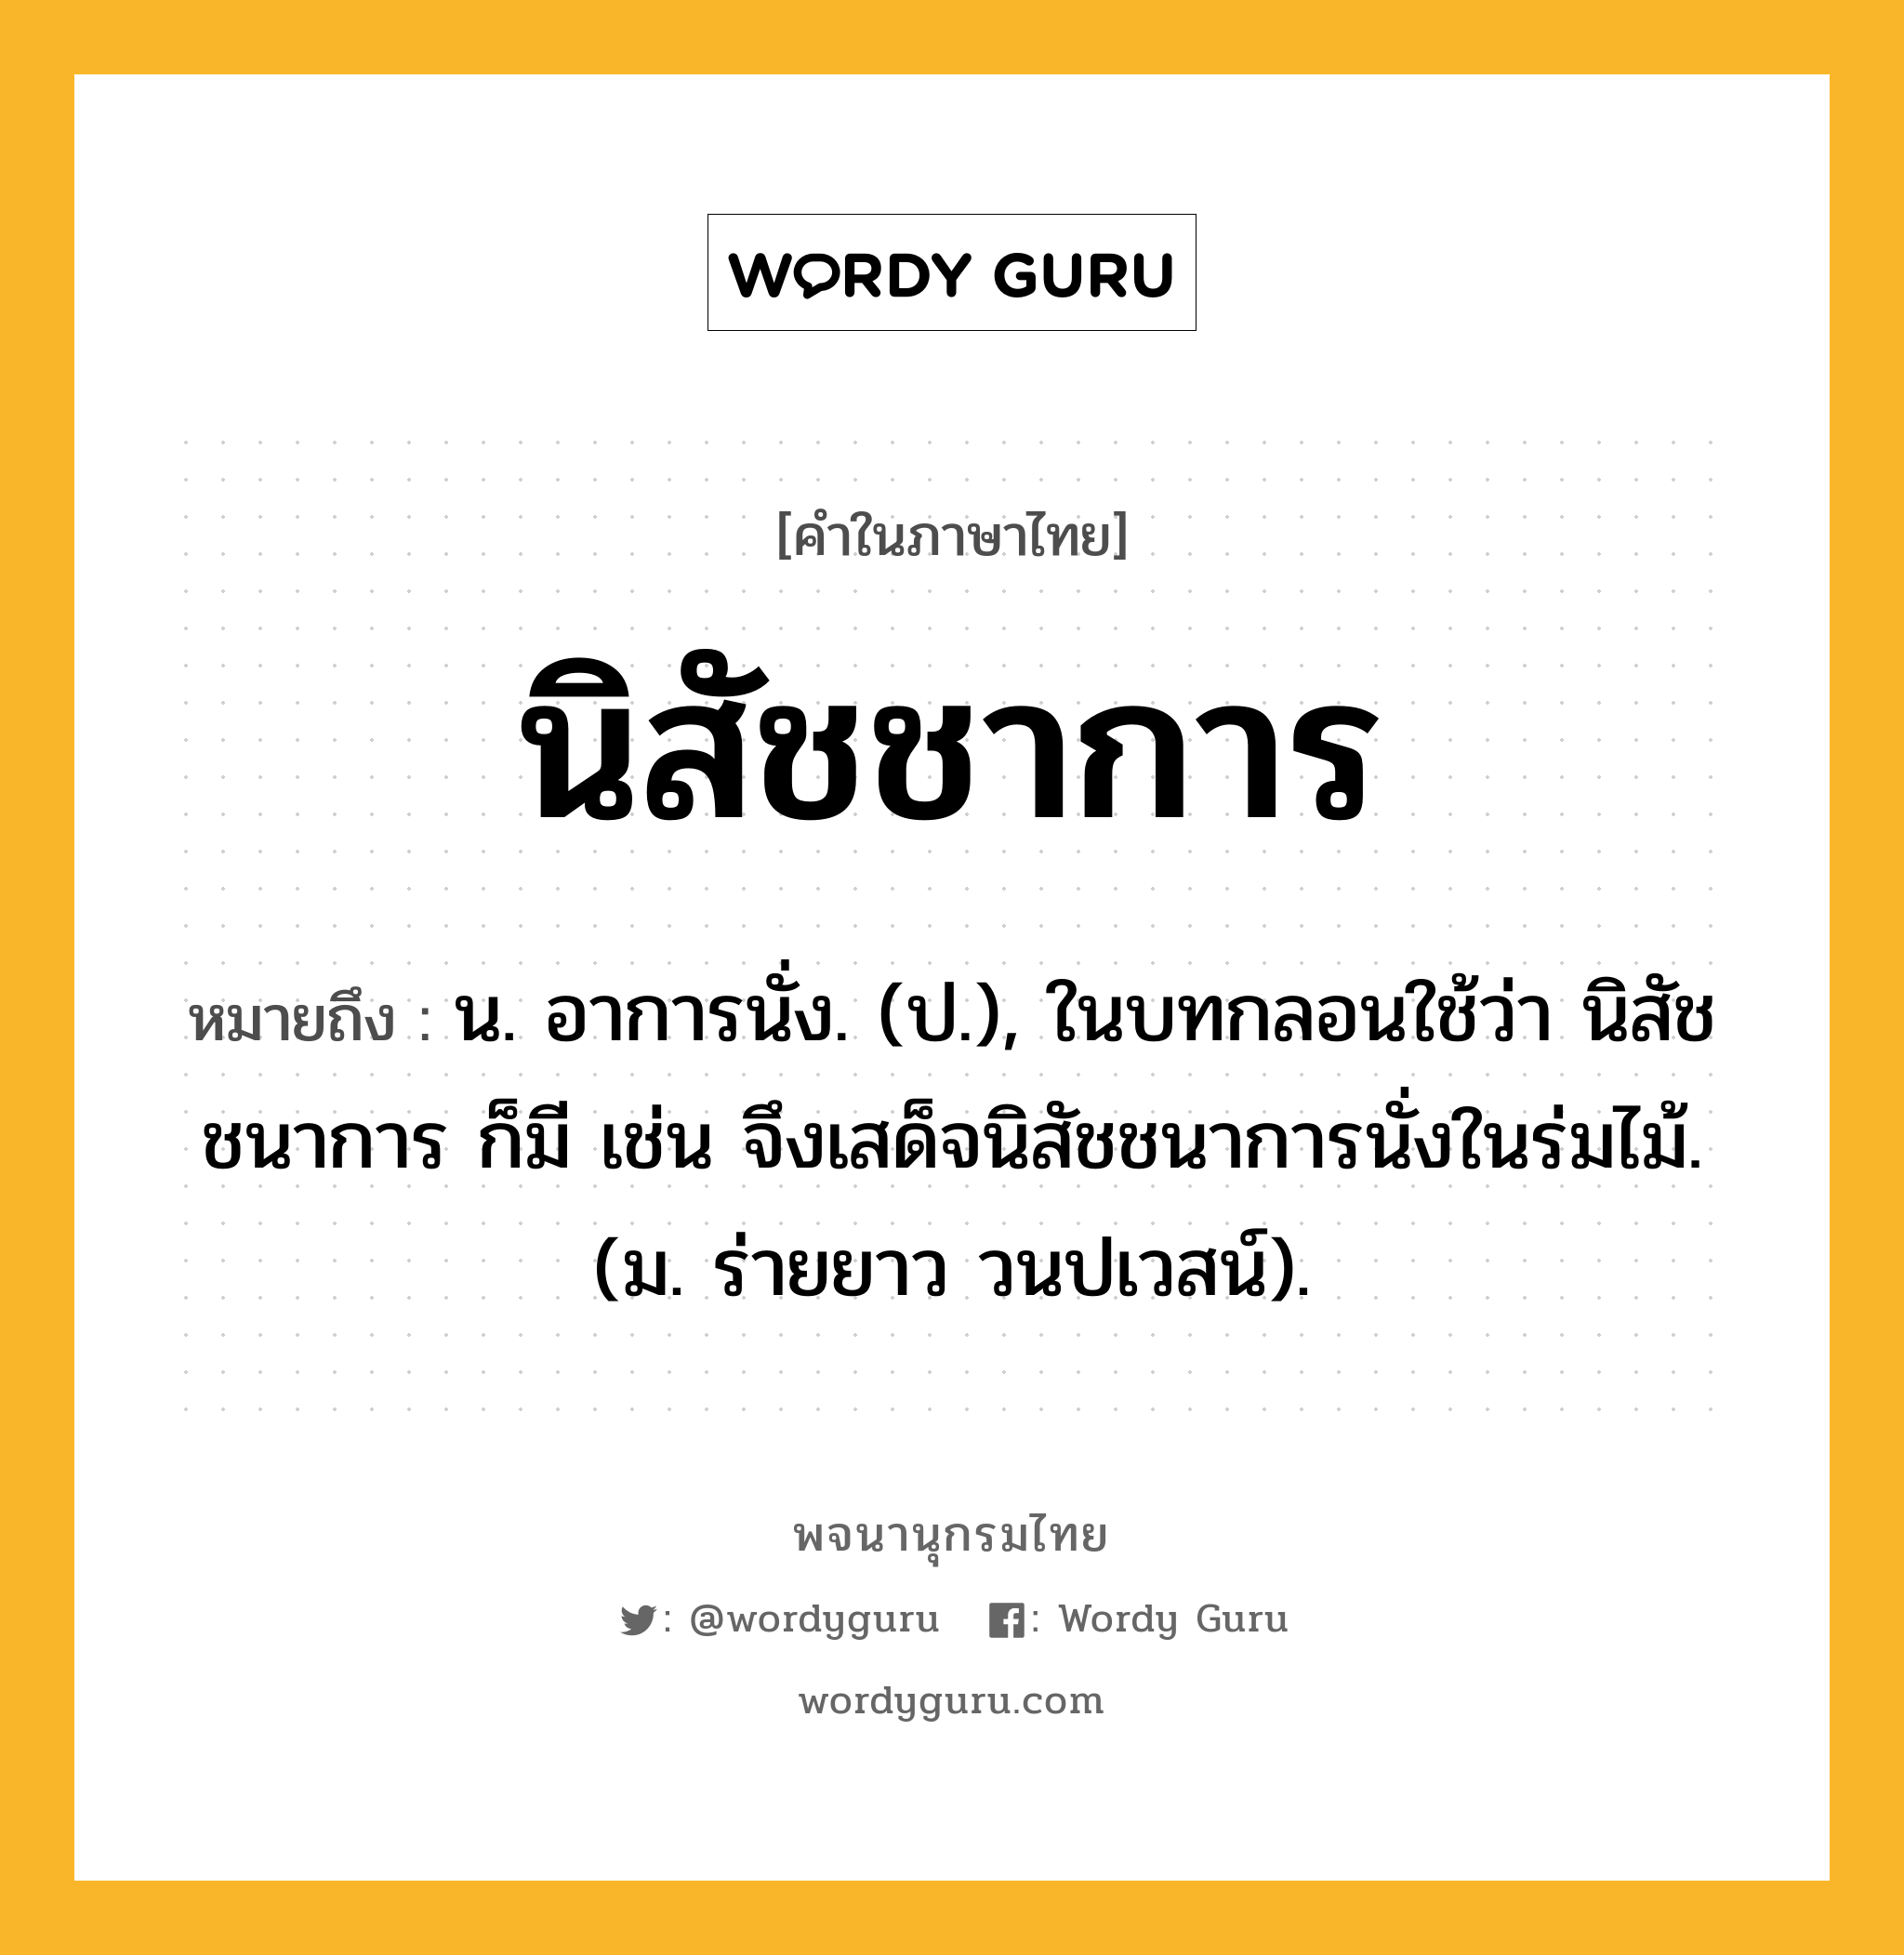 นิสัชชาการ หมายถึงอะไร?, คำในภาษาไทย นิสัชชาการ หมายถึง น. อาการนั่ง. (ป.), ในบทกลอนใช้ว่า นิสัชชนาการ ก็มี เช่น จึงเสด็จนิสัชชนาการนั่งในร่มไม้. (ม. ร่ายยาว วนปเวสน์).